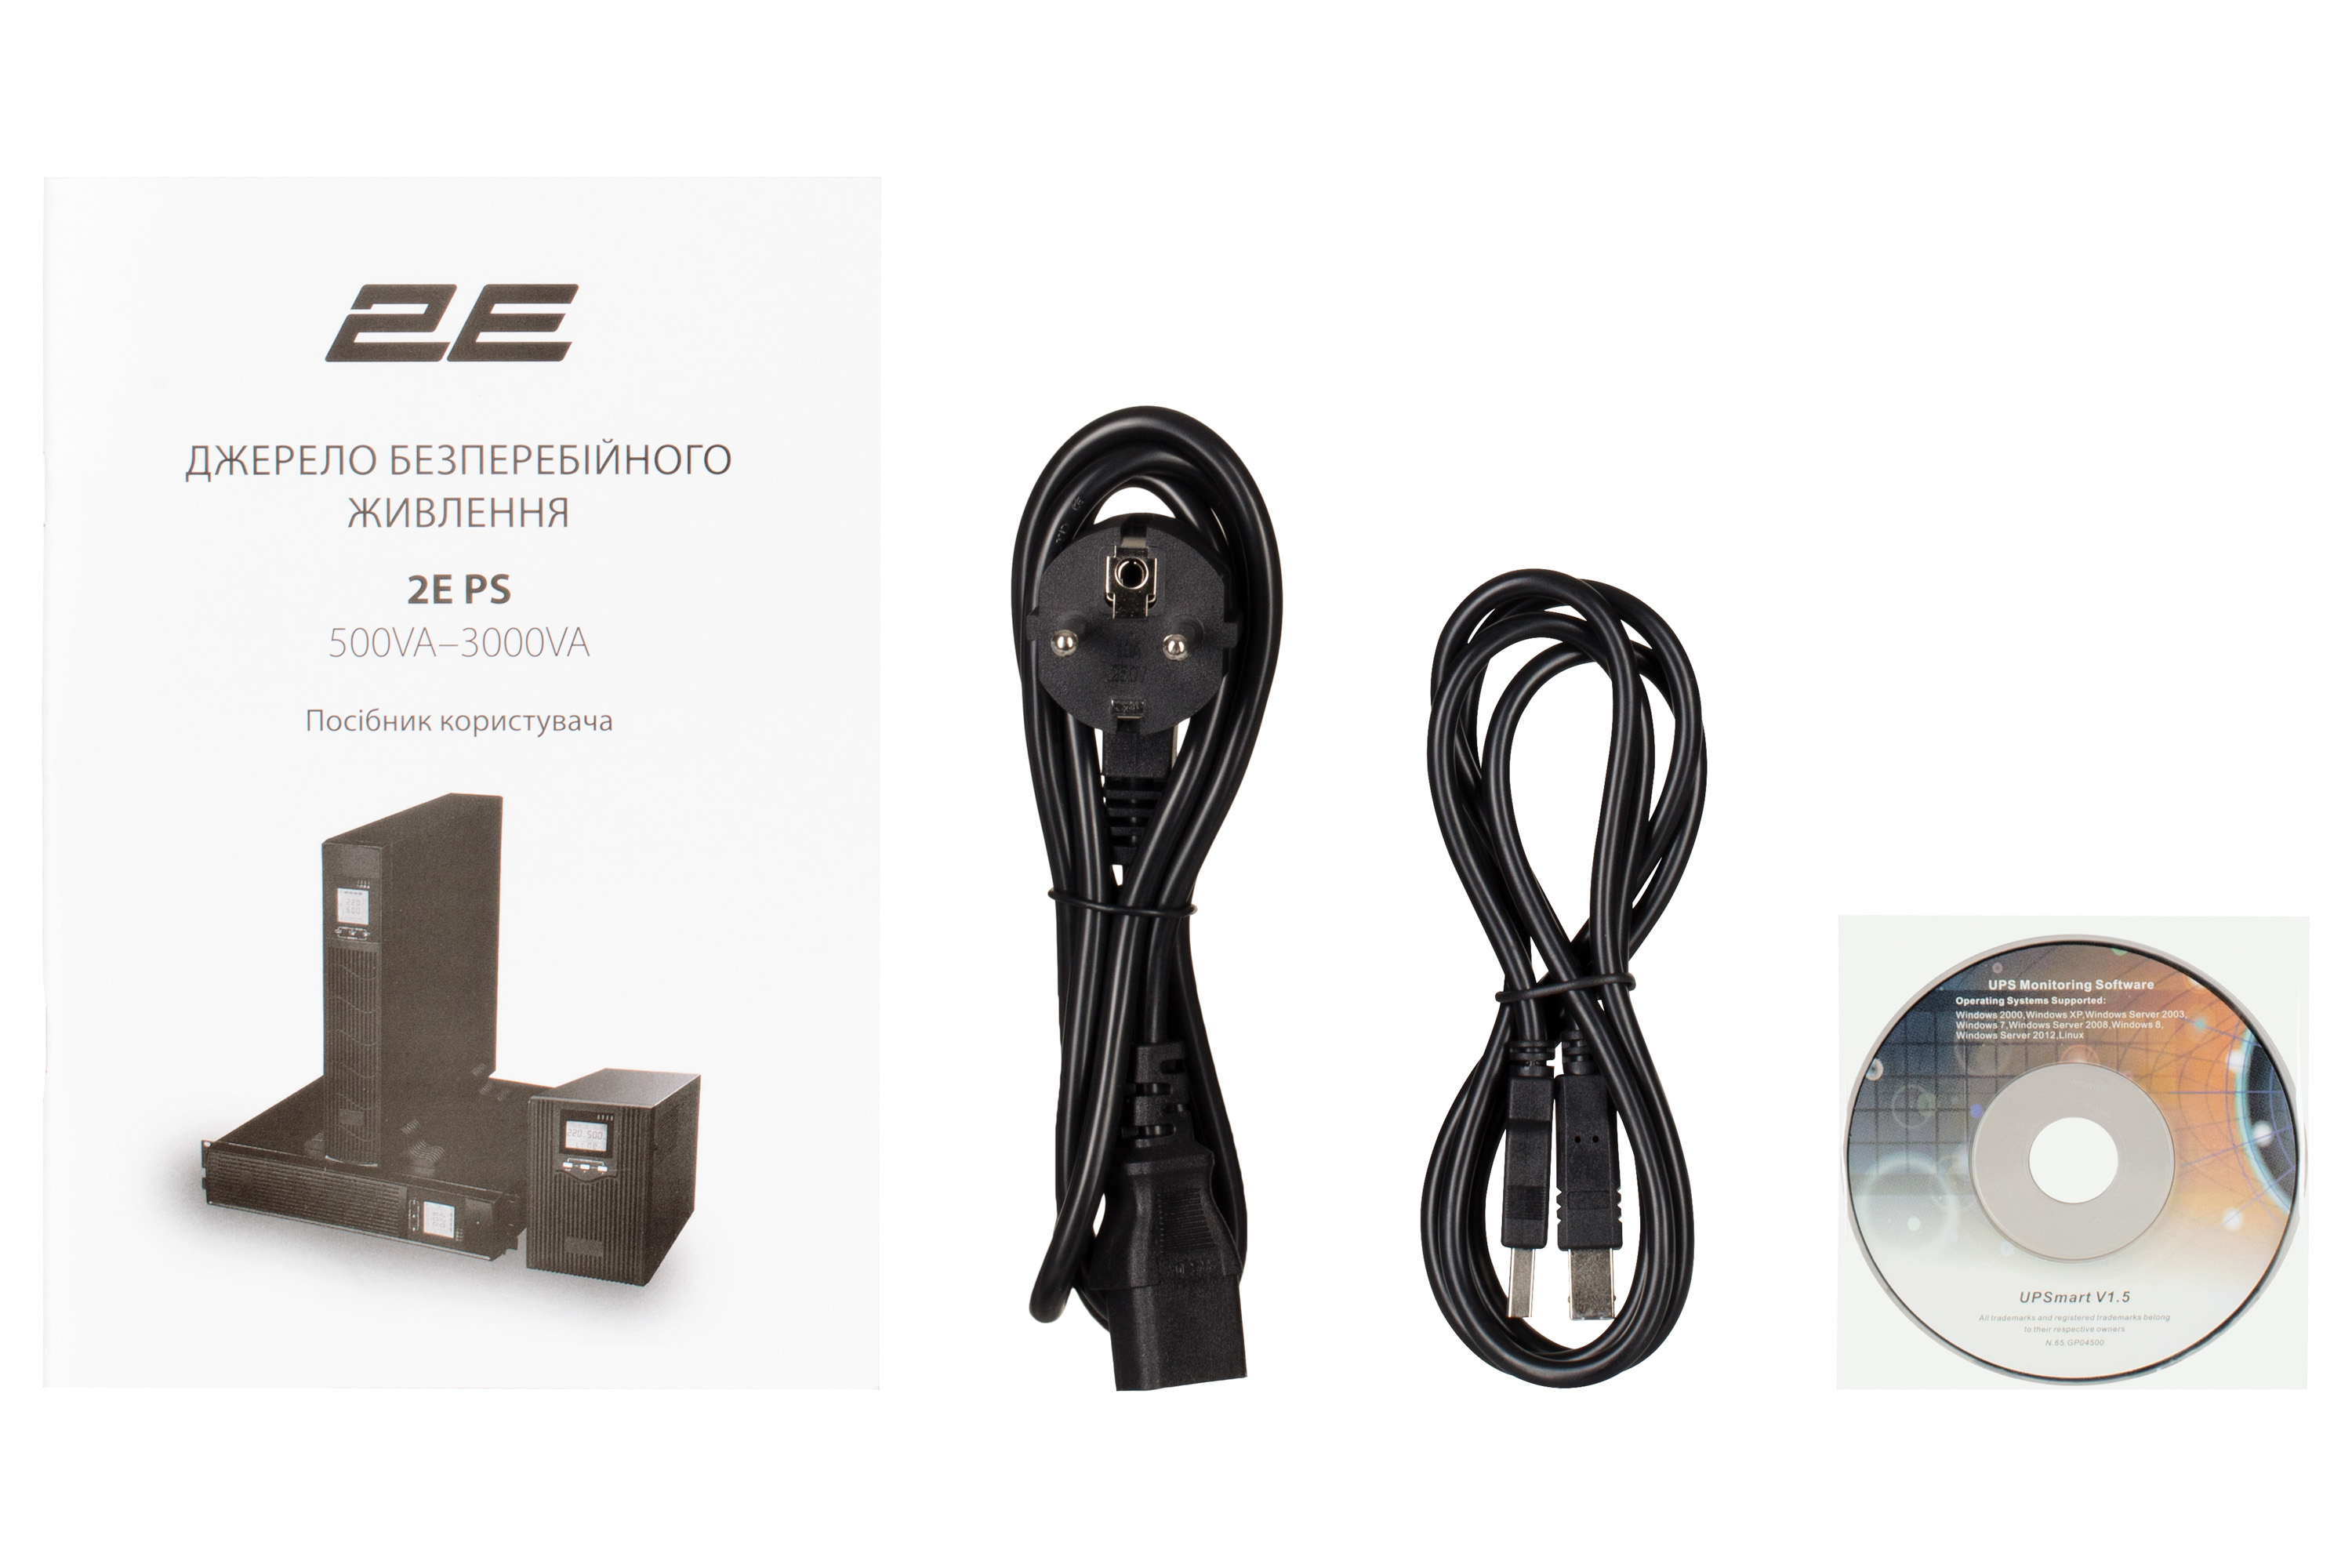 Джерело безперебійного живлення 2E PS3000RT, 3000VA/2400W, RT3U, LCD, USB, 6xC13 характеристики - фотографія 7